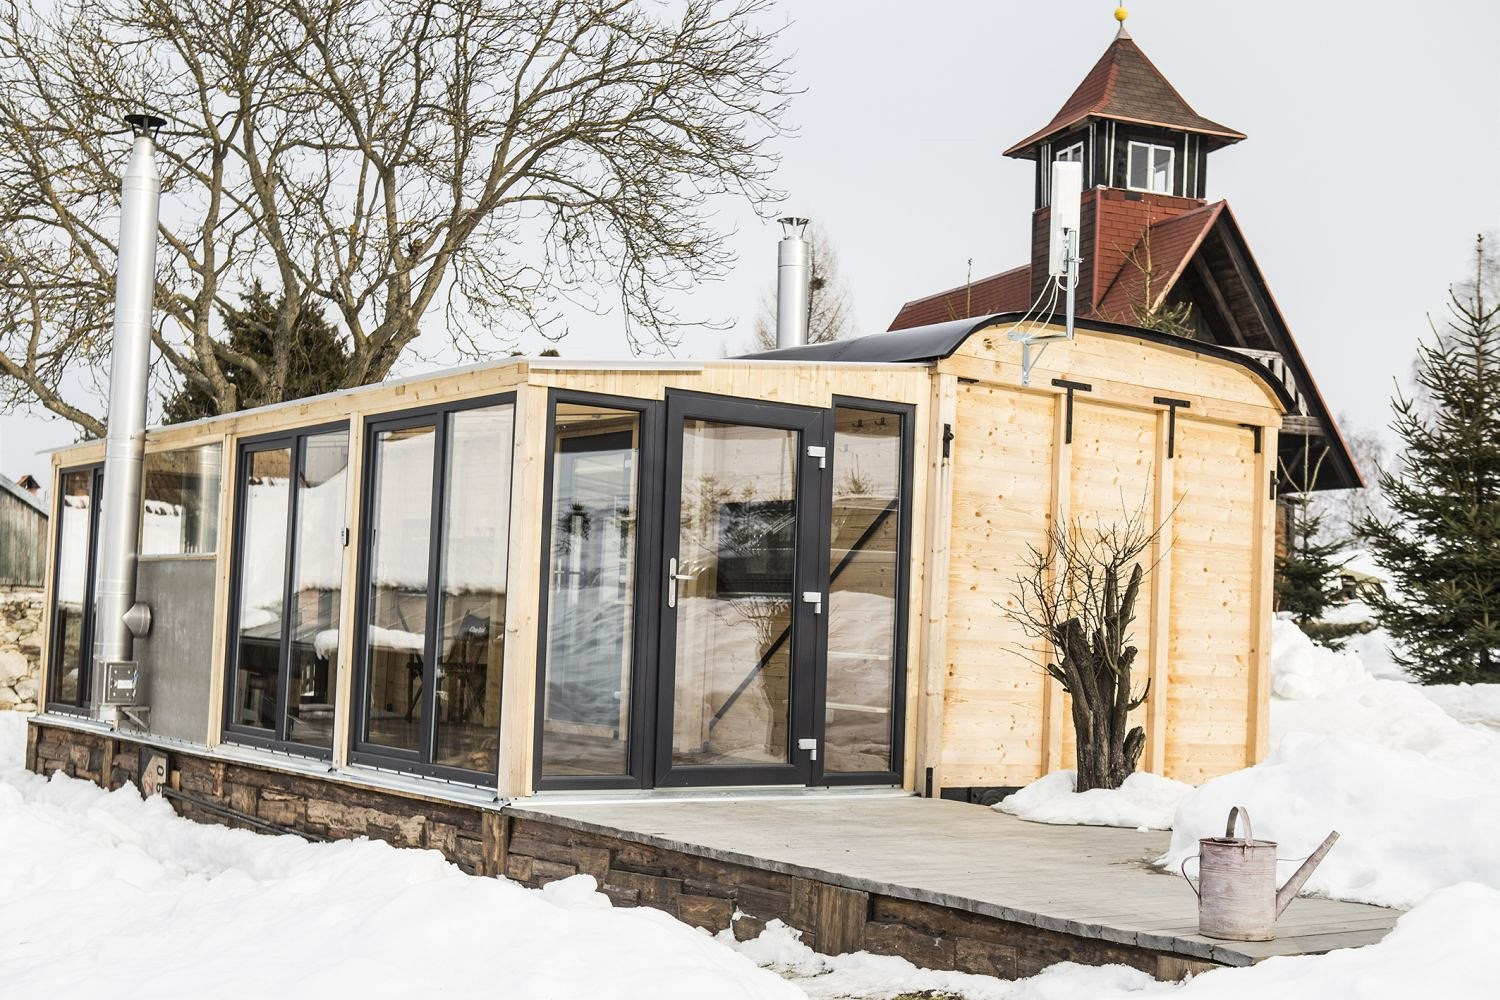 Vďaka zimnej záhrade ponúka "wagon house" obytnú plochu približne 40 metrov štvorcových.